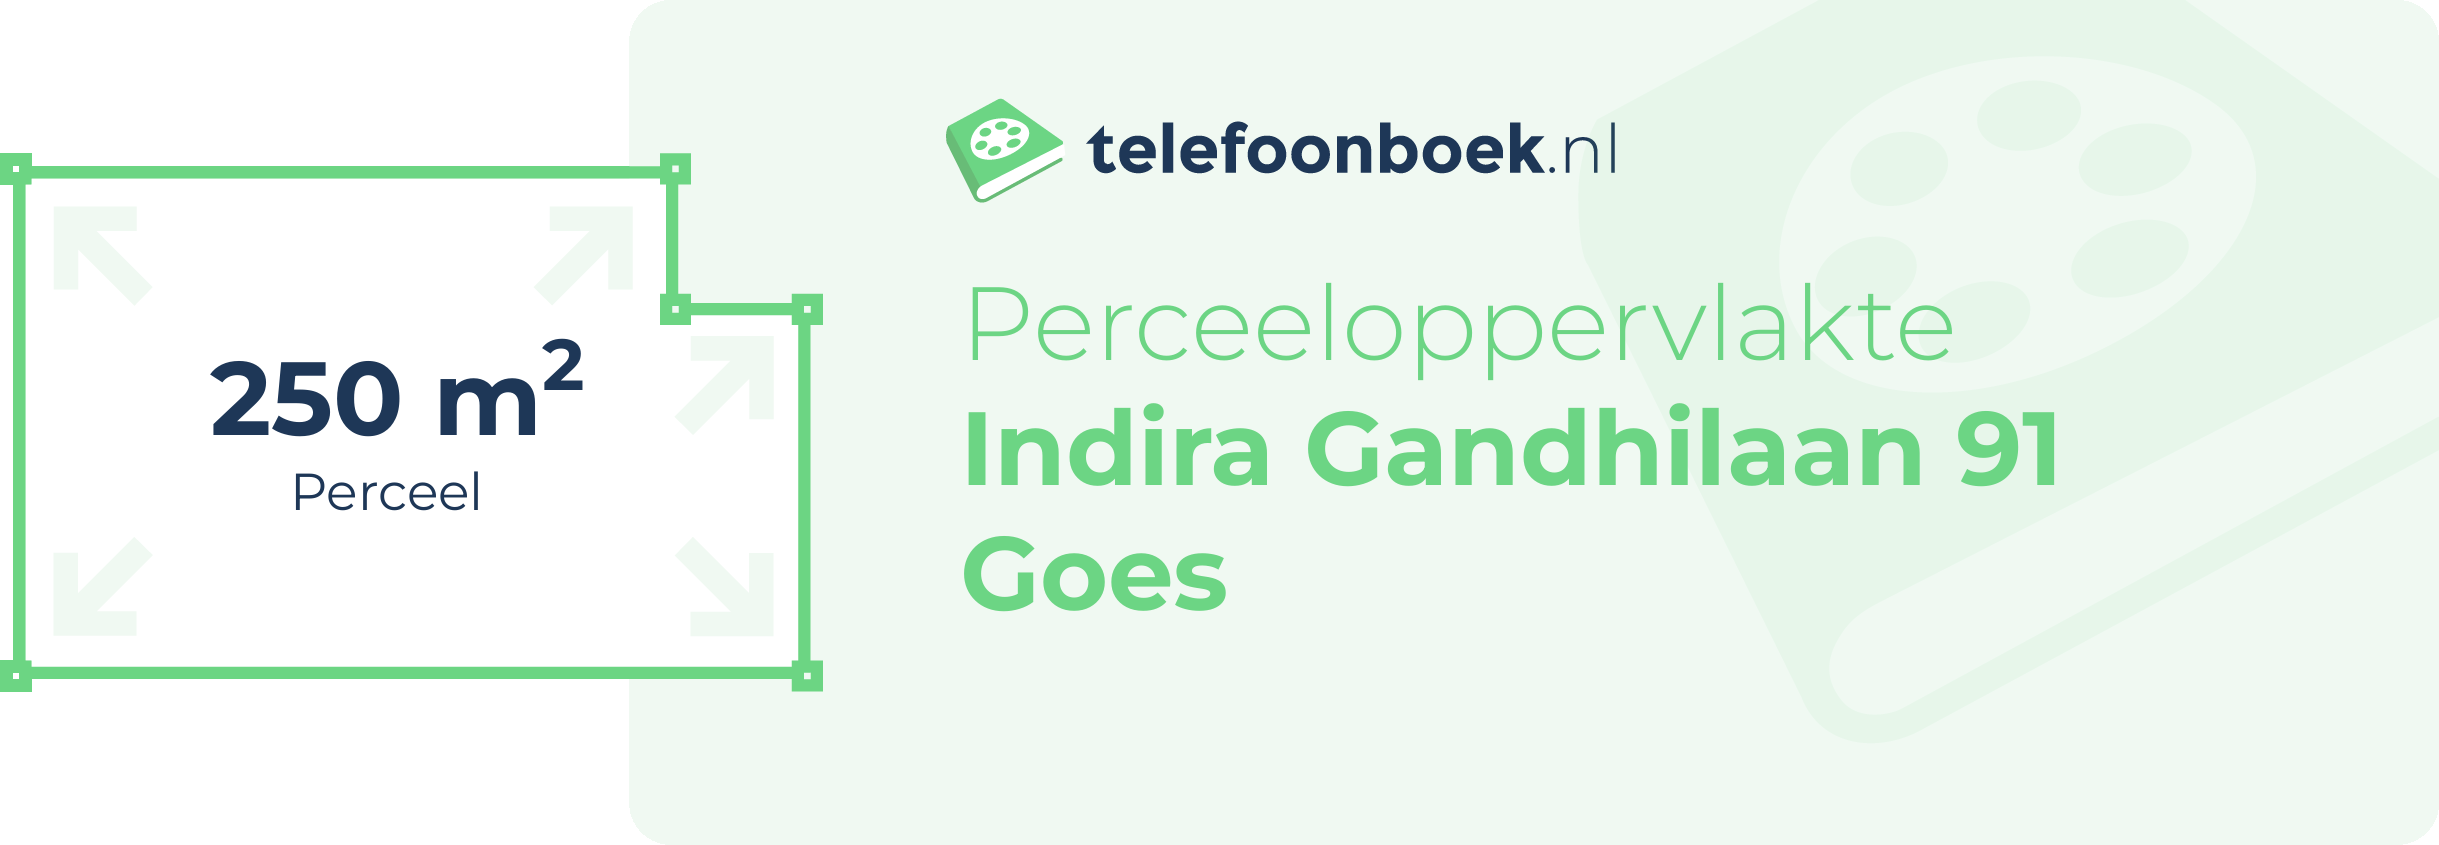 Perceeloppervlakte Indira Gandhilaan 91 Goes